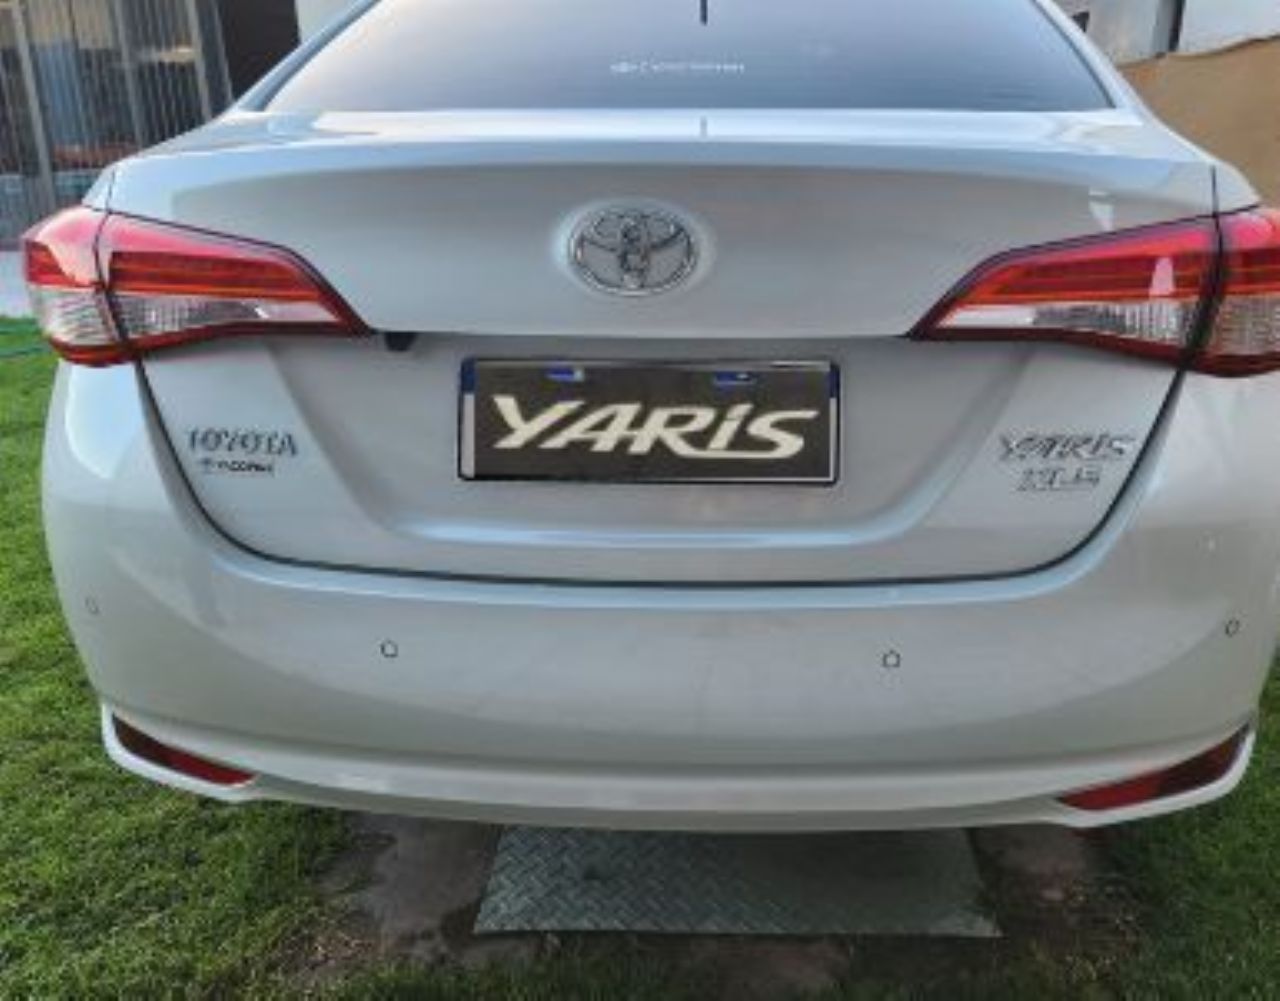 Toyota Yaris Nuevo en Mendoza, deRuedas